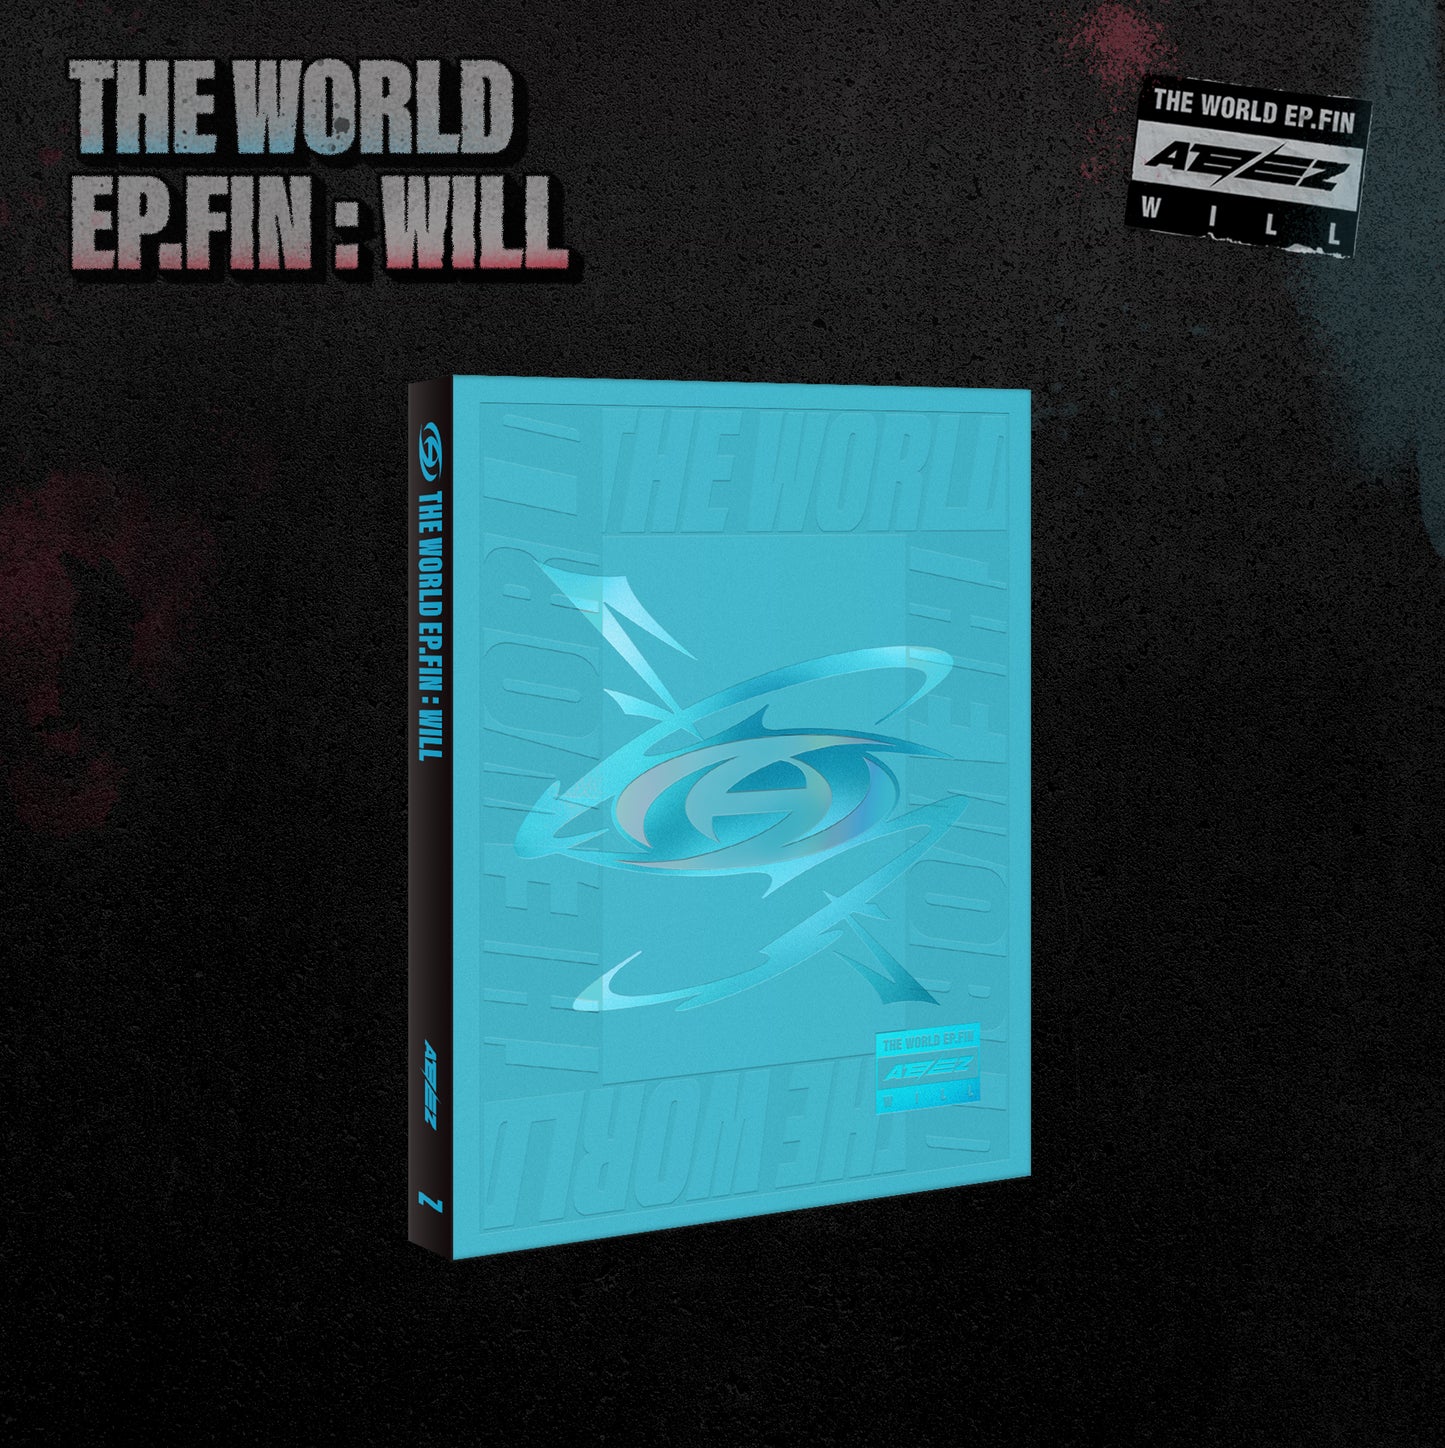 [PRE-ORDER] ATEEZ 에이티즈 - 10th Mini-Album 'THE WORLD EP.FIN : WILL' (Korean Version) + Apple Music POB